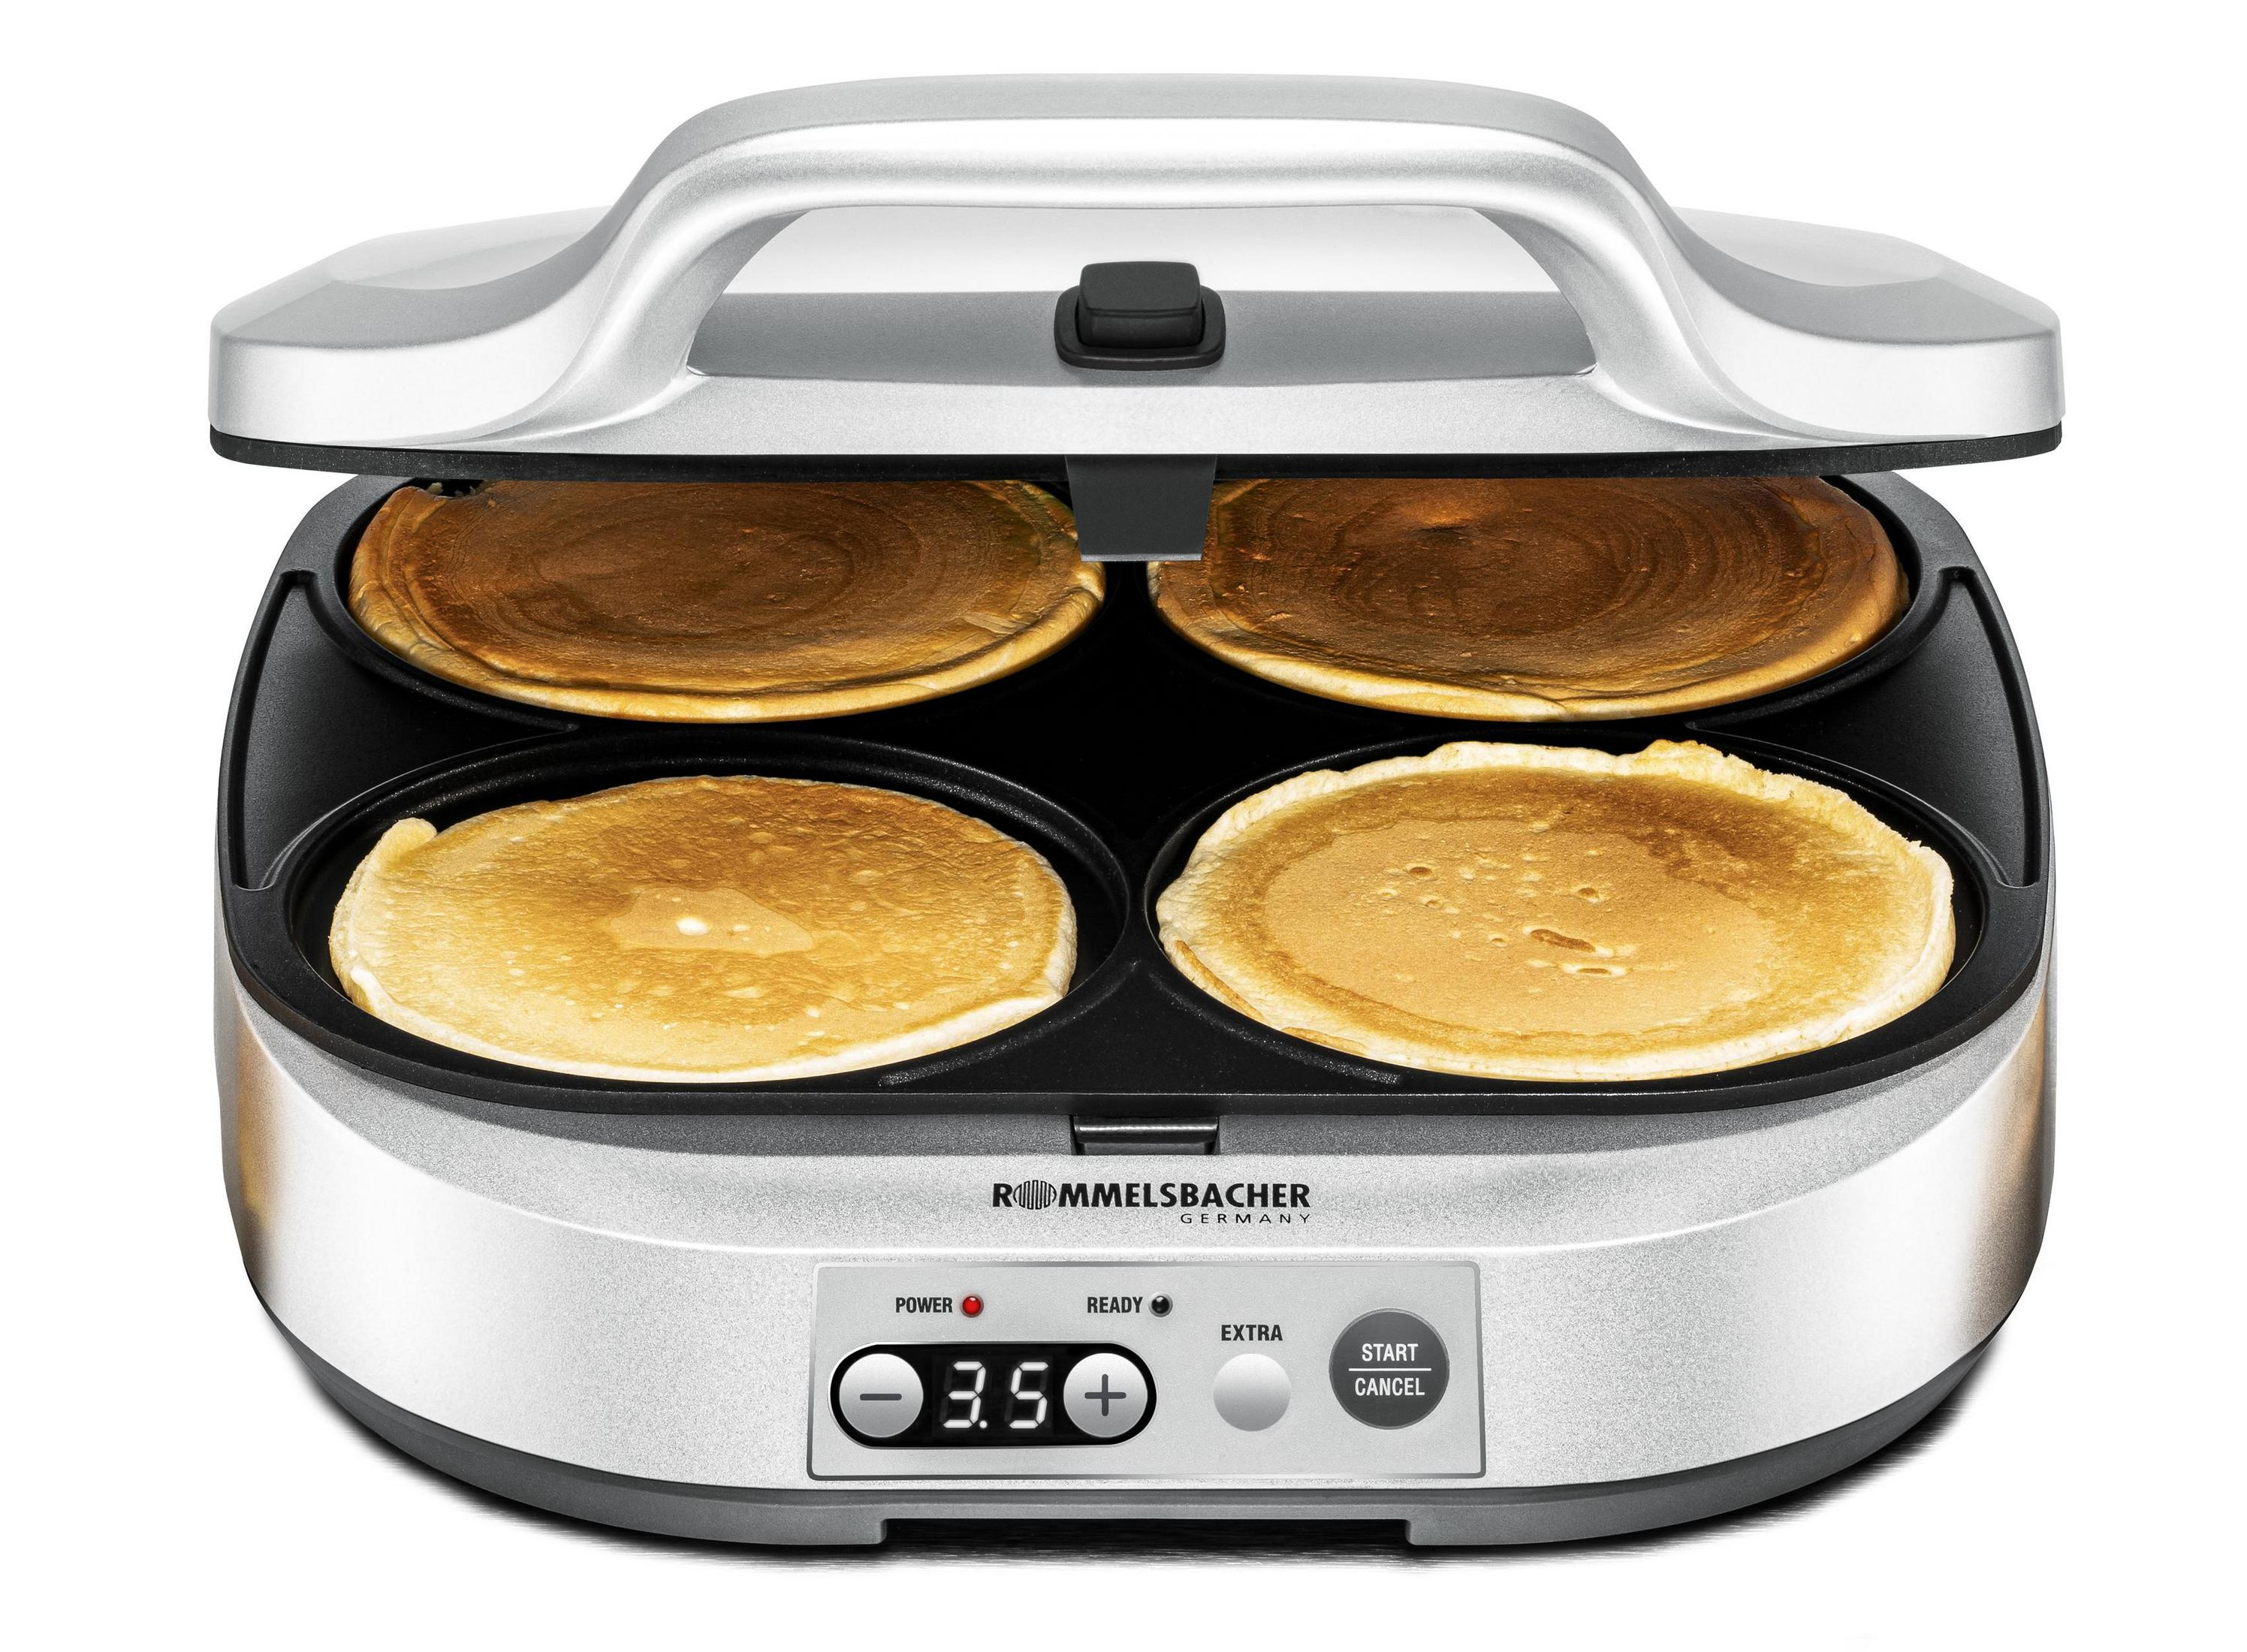 PC Silber 1800 Pancake-Maker ROMMELSBACHER